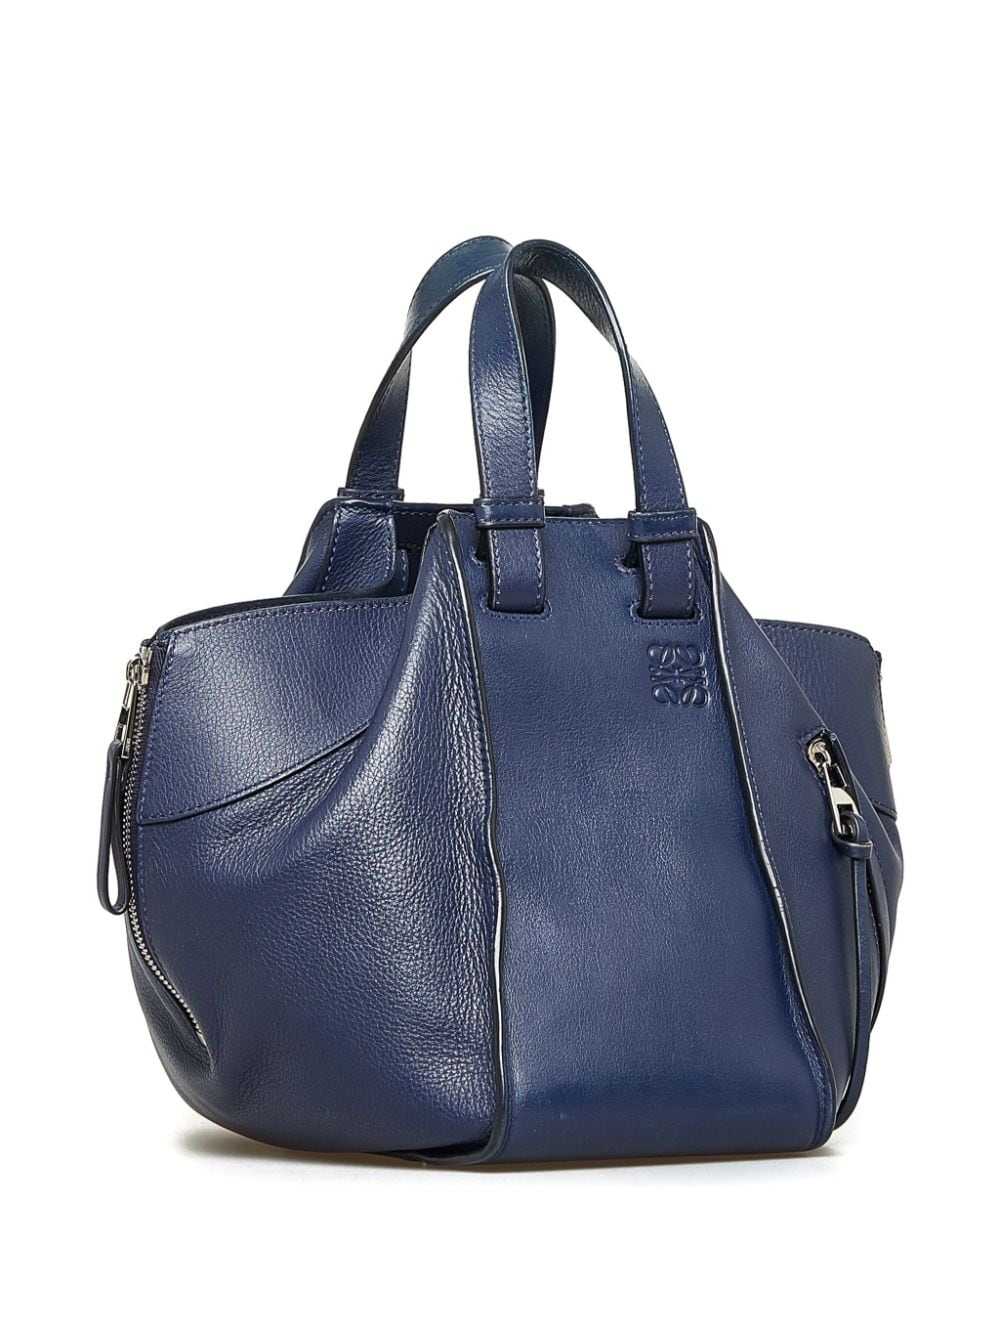 Loewe Pre-Owned 2016 Hammock satchel - Blue - image 3